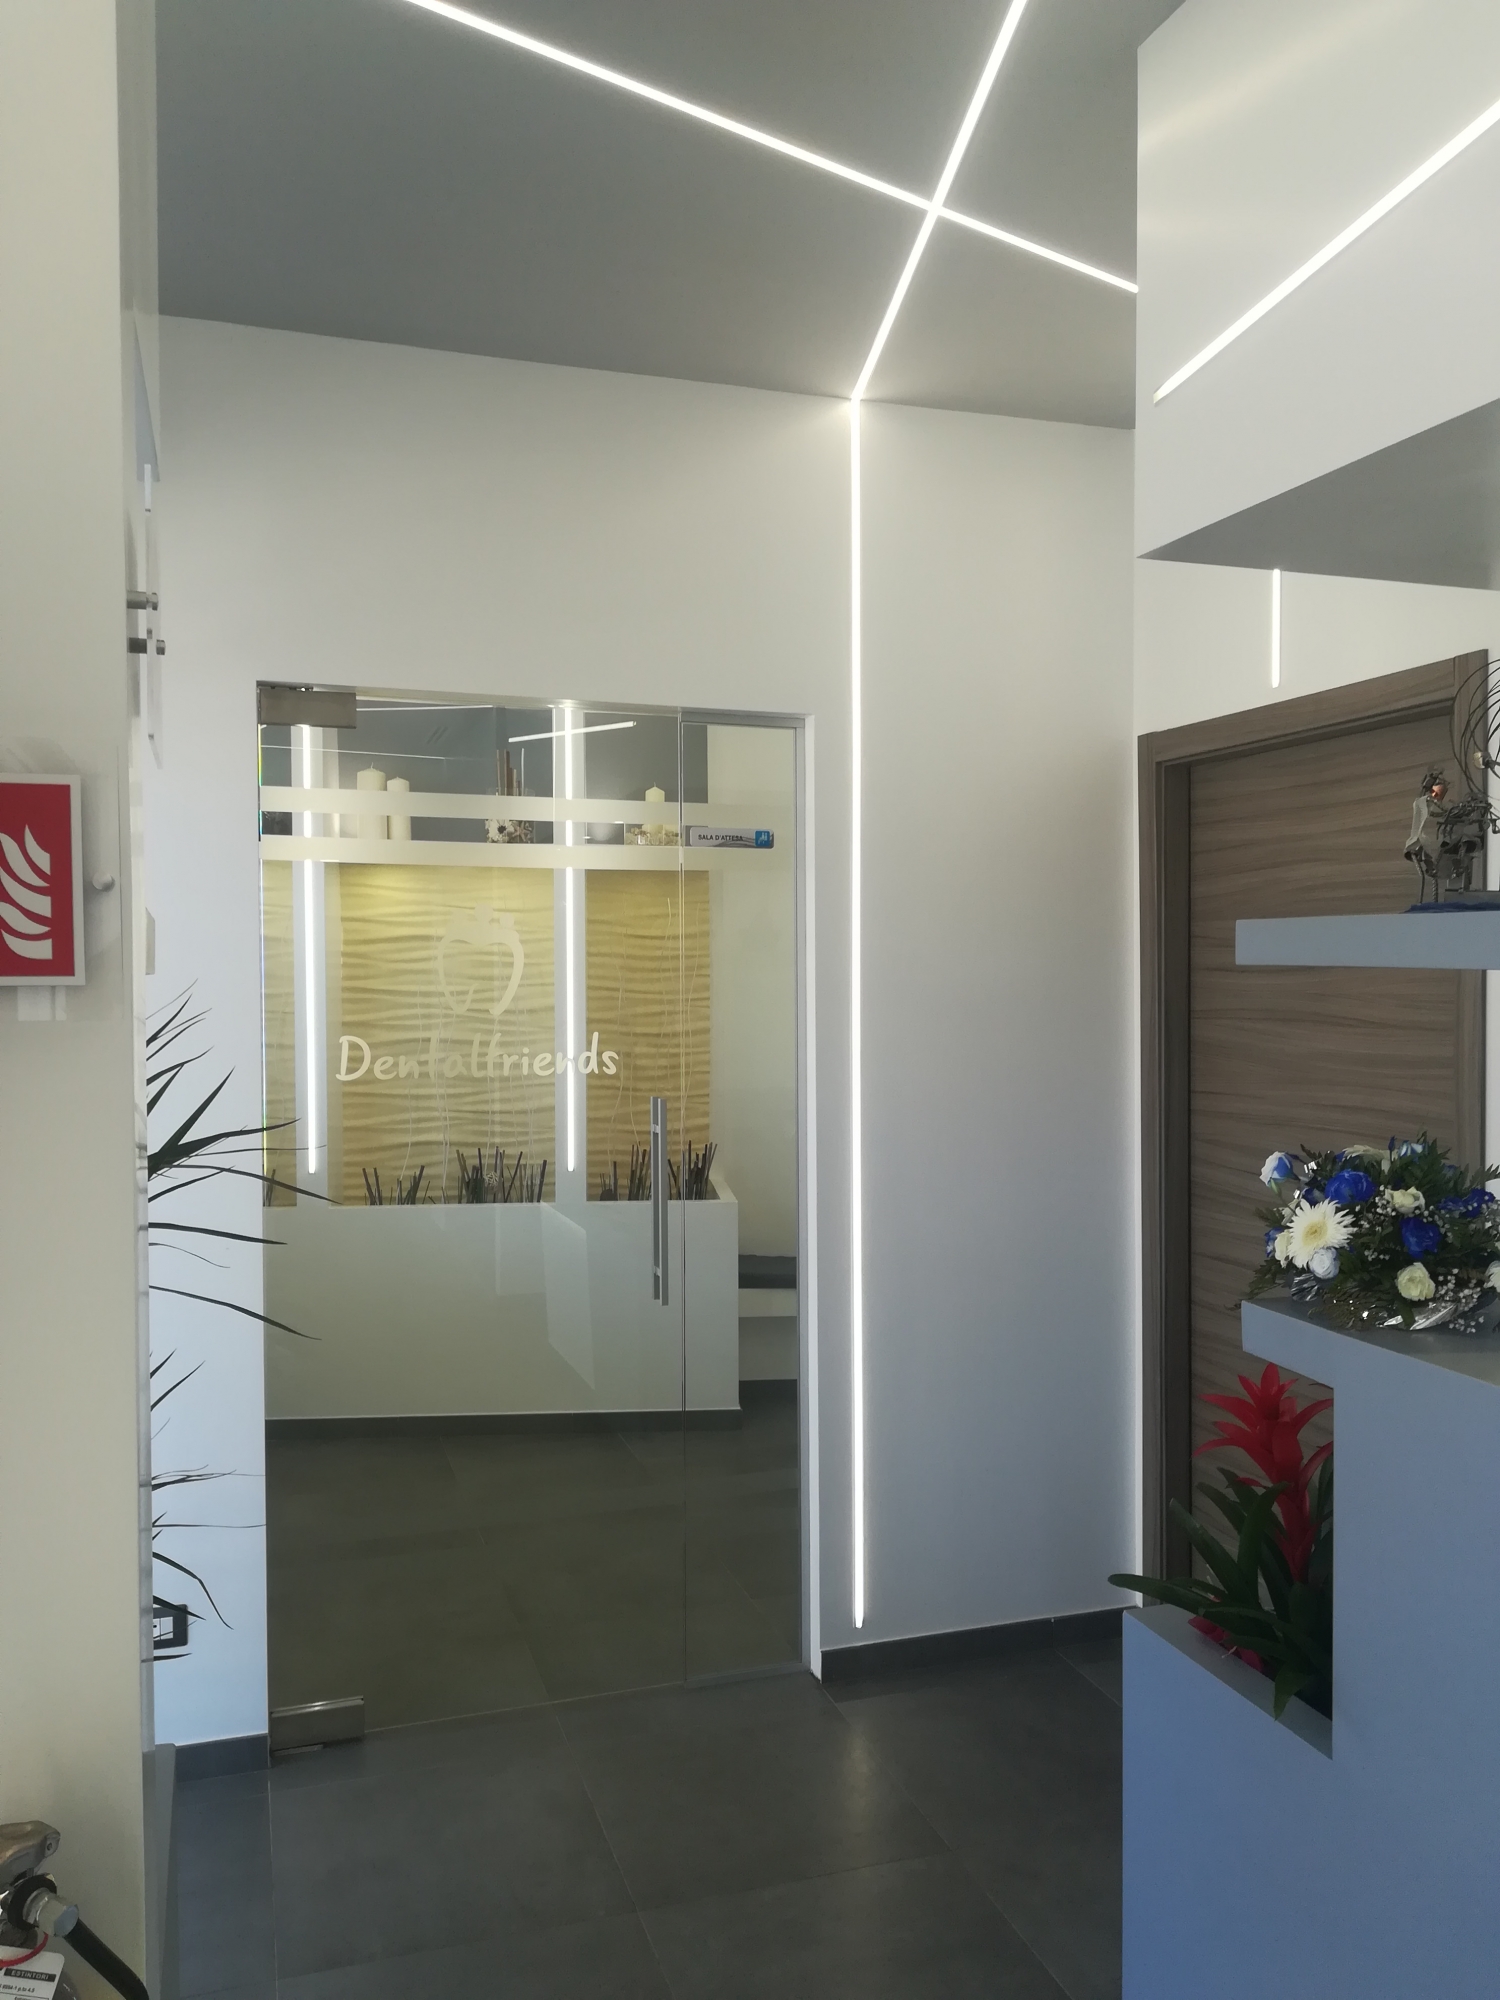 Sala d'attesa - studio odontoiatrico progetto - Architetto - Led - soffitto in cartongesso